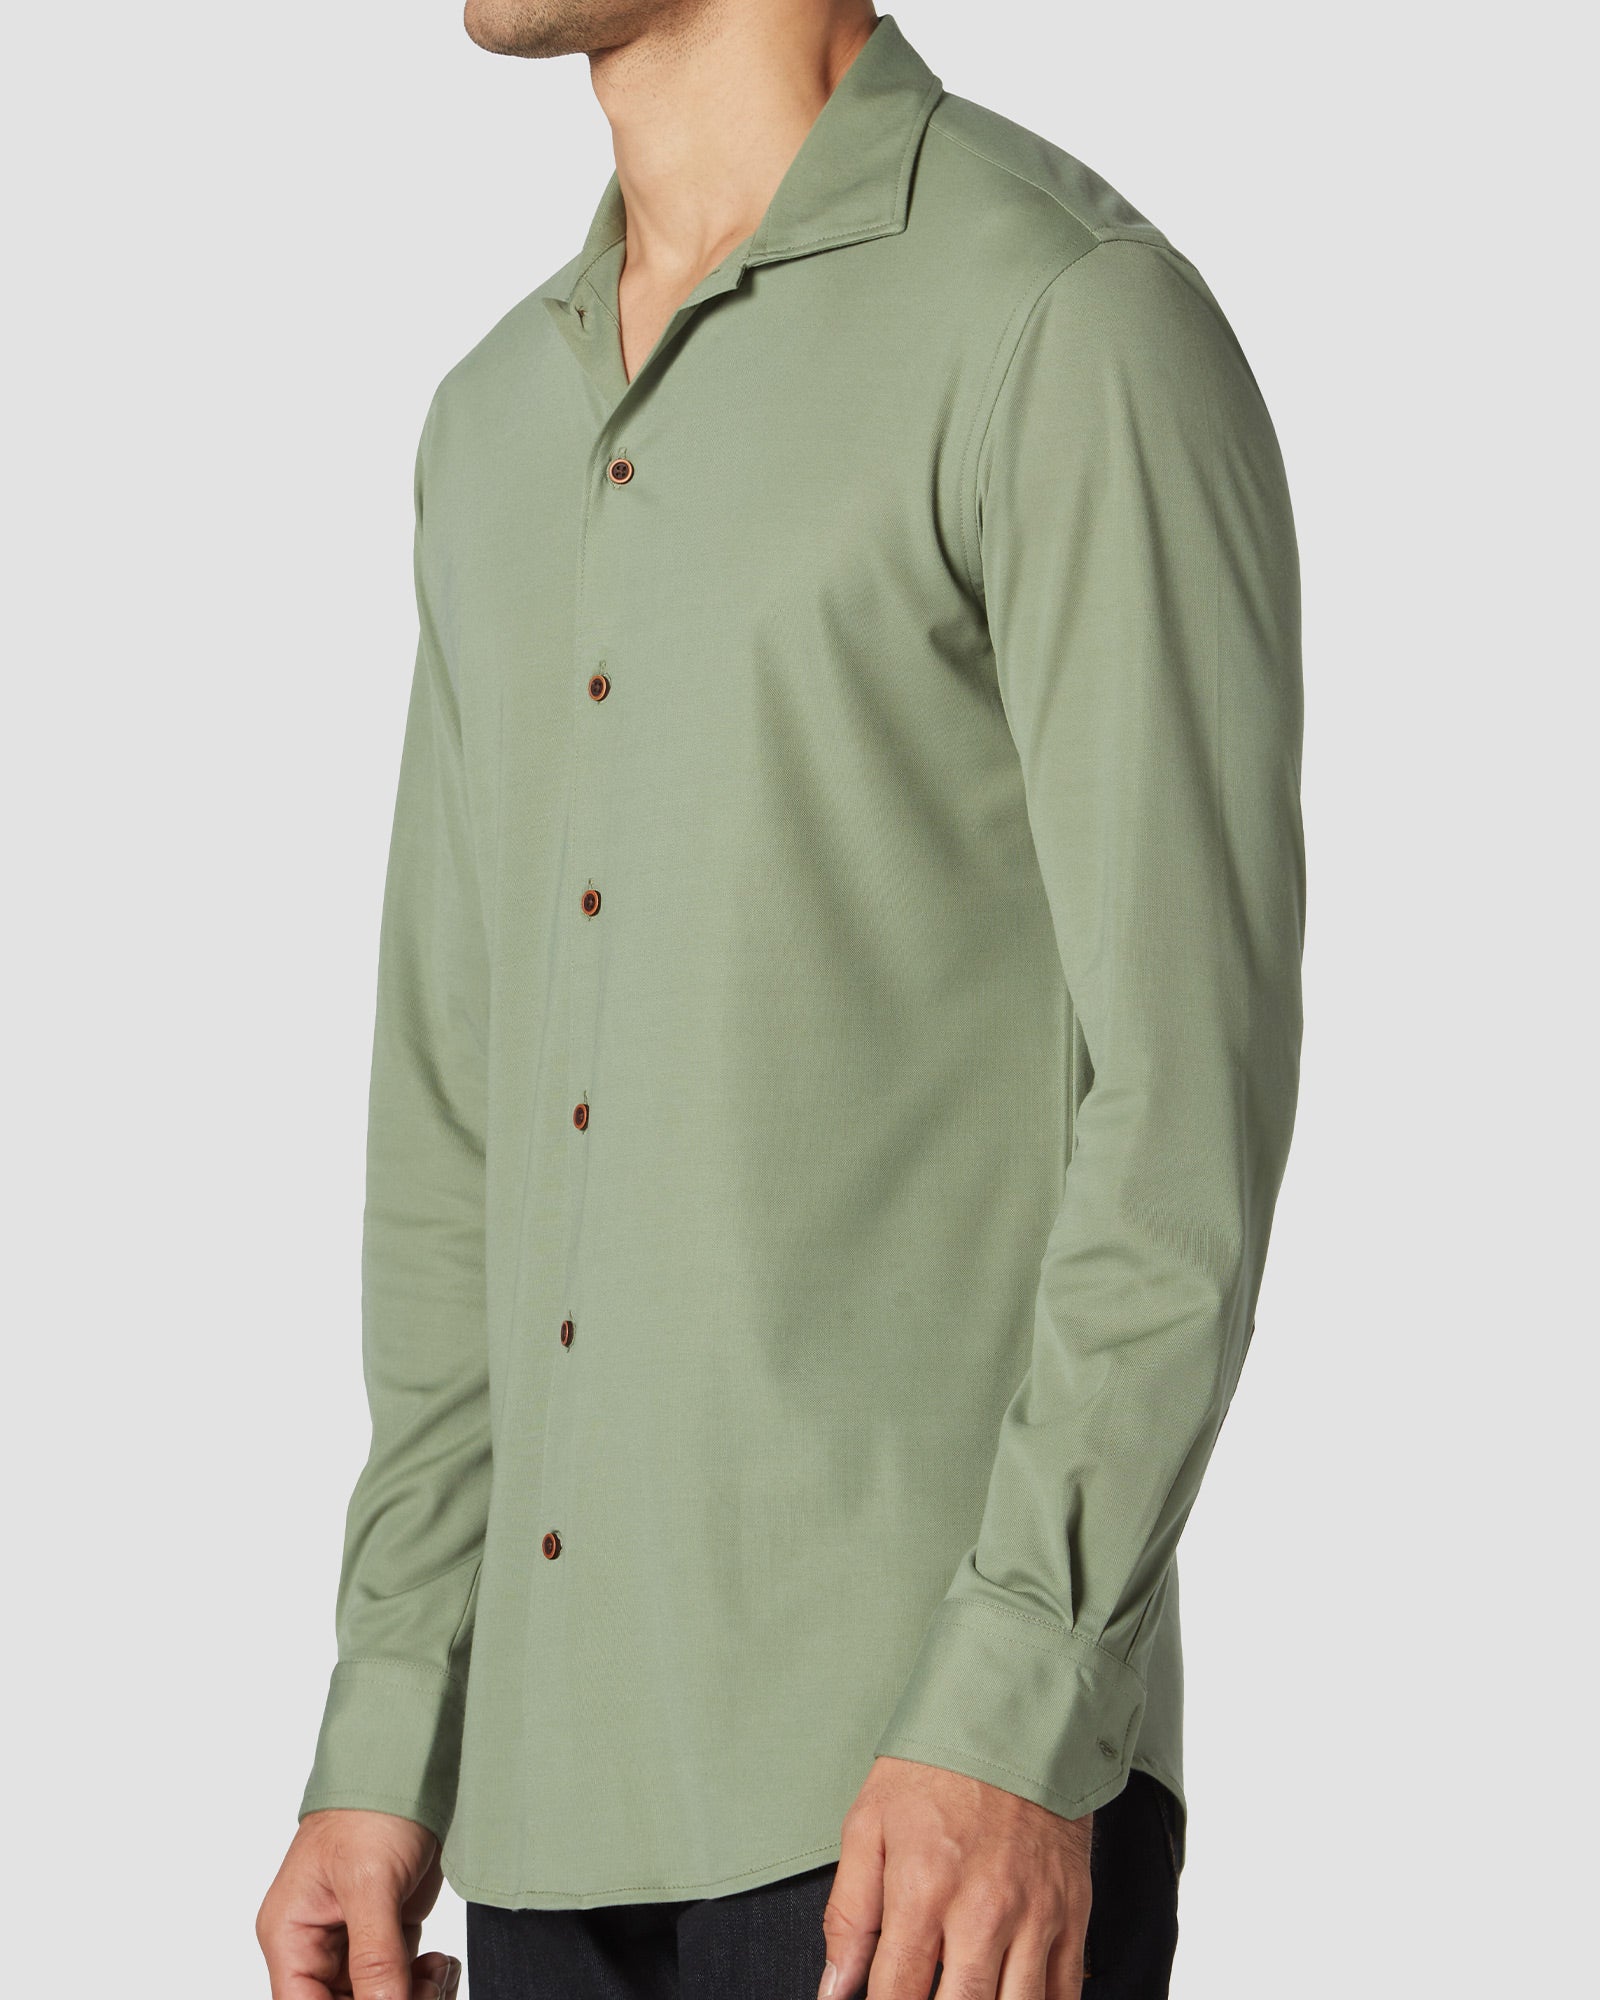 Bombay Shirt Company - Jade Knit Shirt